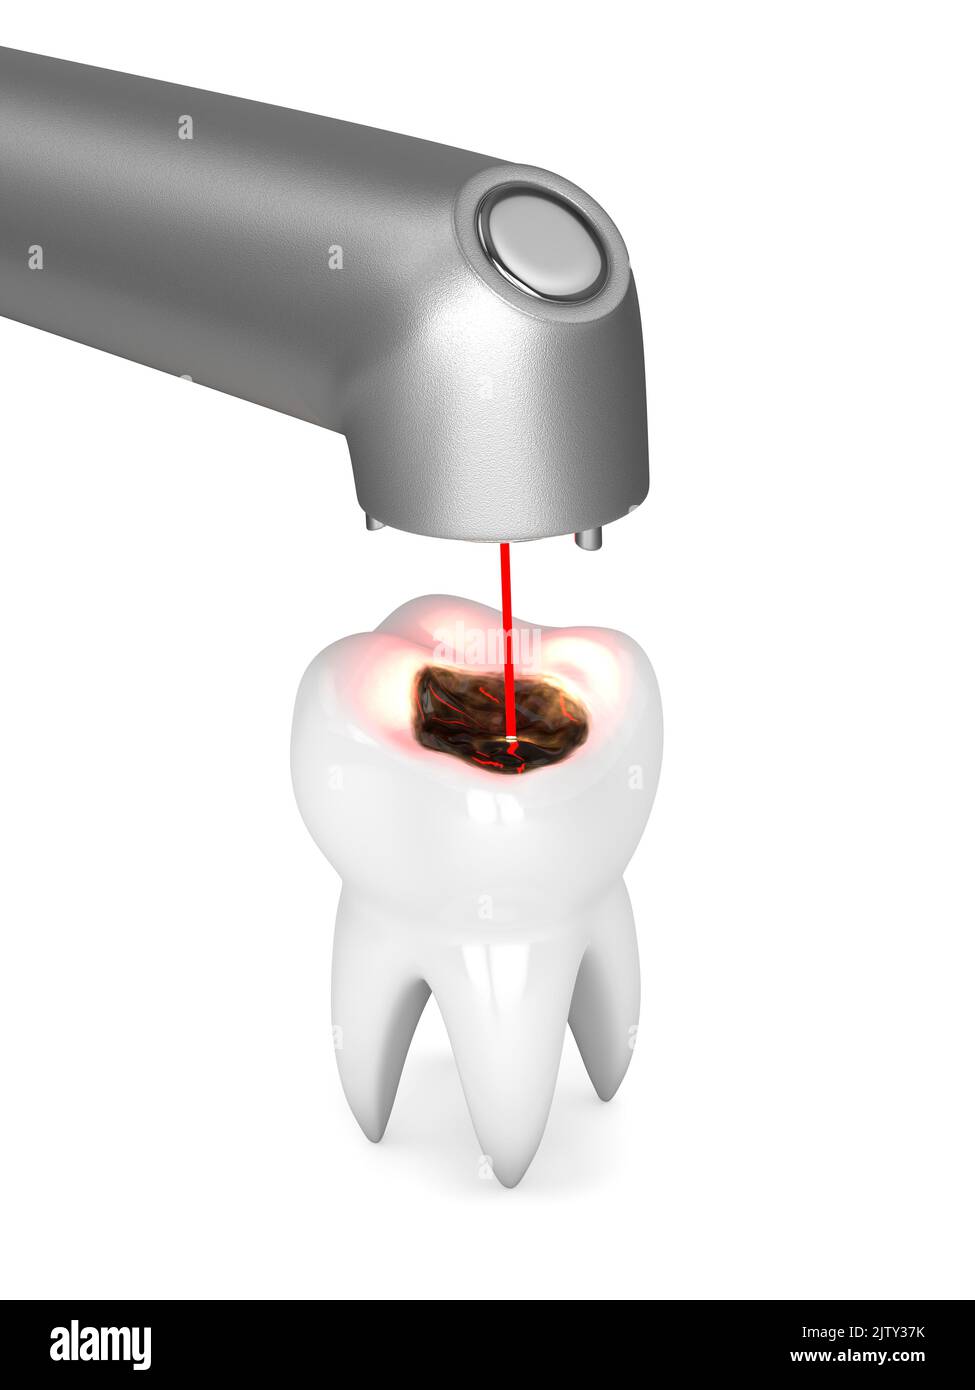 3d rendu de l'élimination de la carie dentaire avec laser dentaire. Nettoyage des dents sans douleur sans foret dentaire concept Banque D'Images